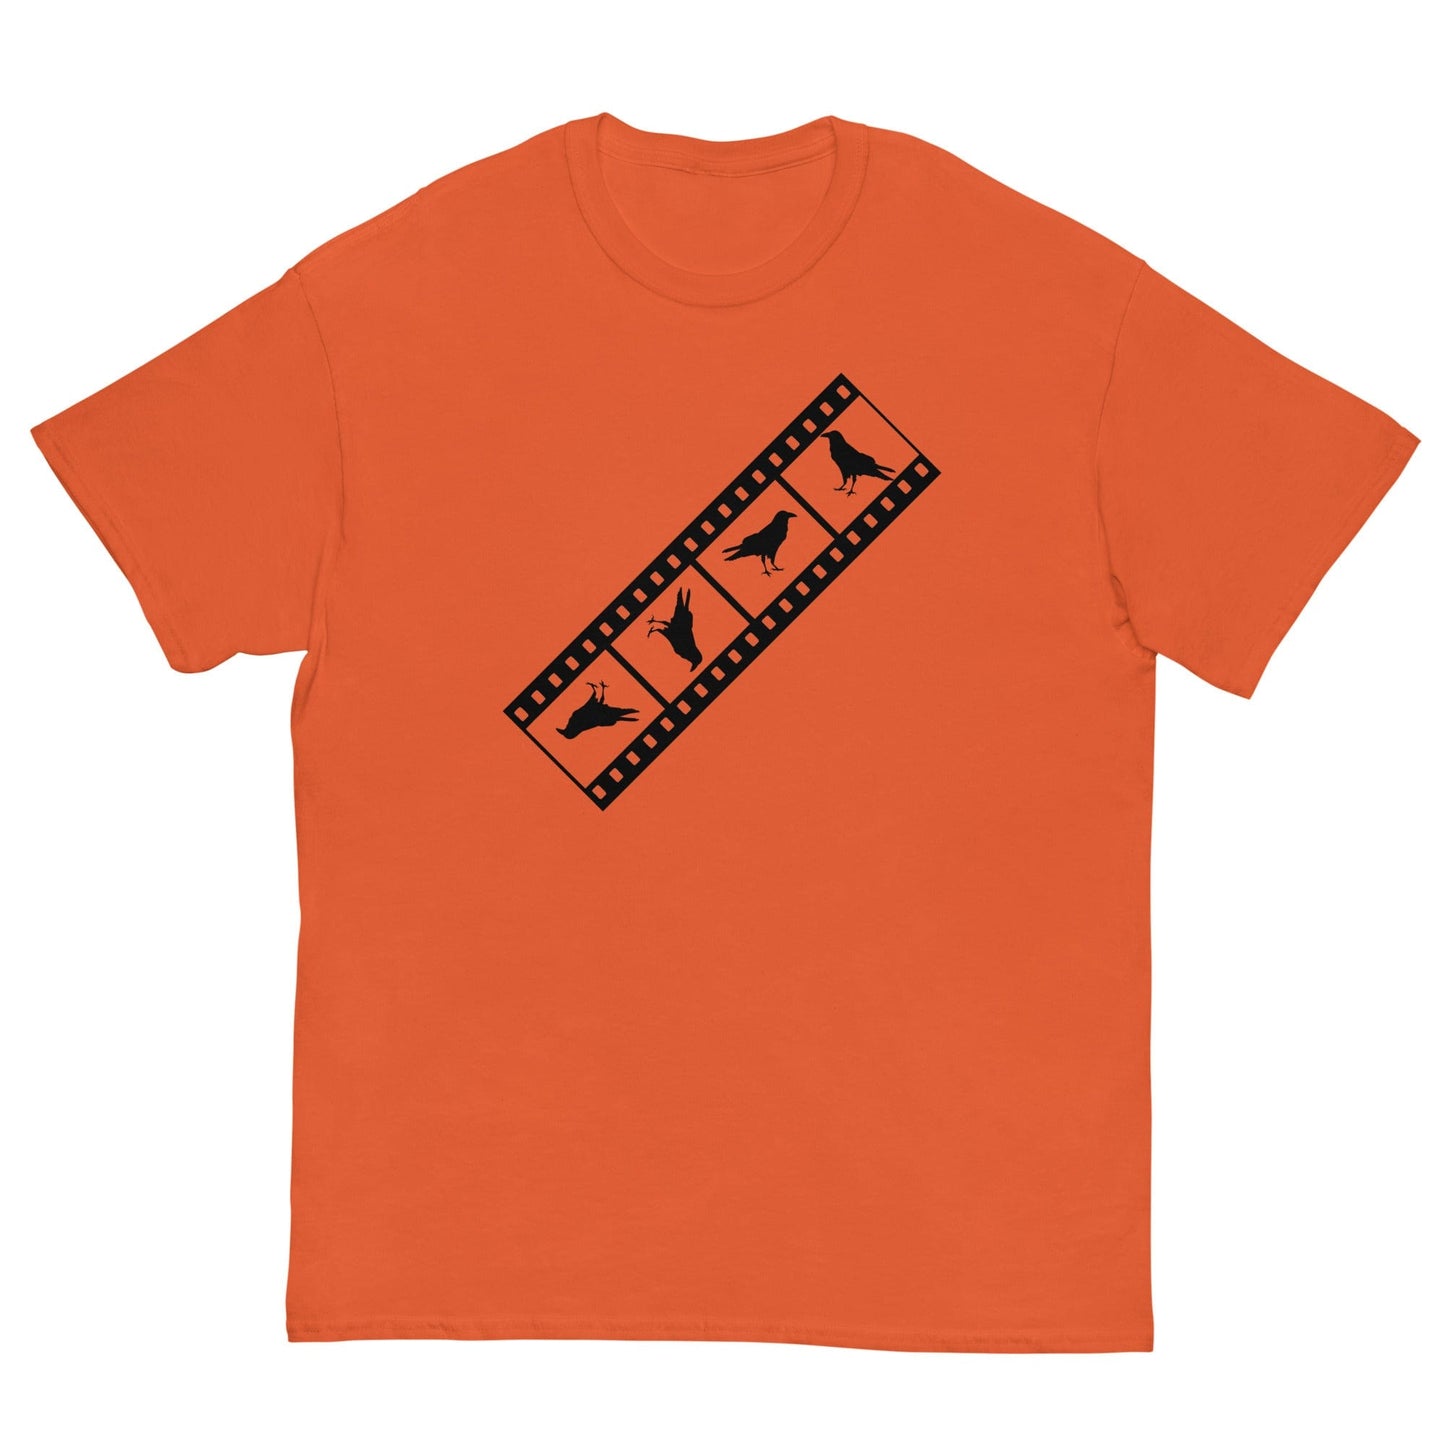 Birds Film Strip T-shirt Orange / S